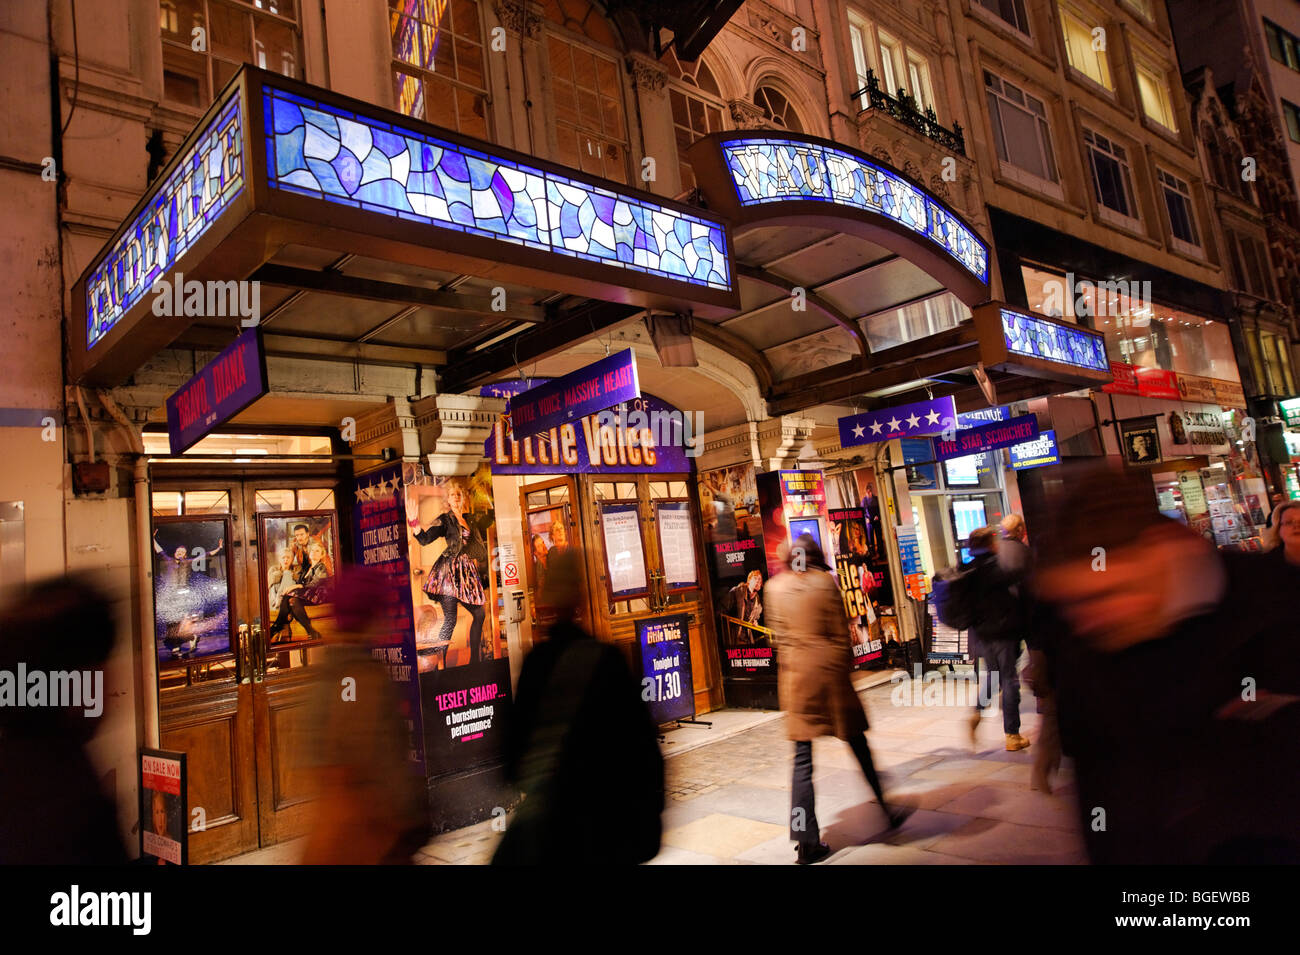 Vaudeville theatre. London. UK 2009. Stock Photo